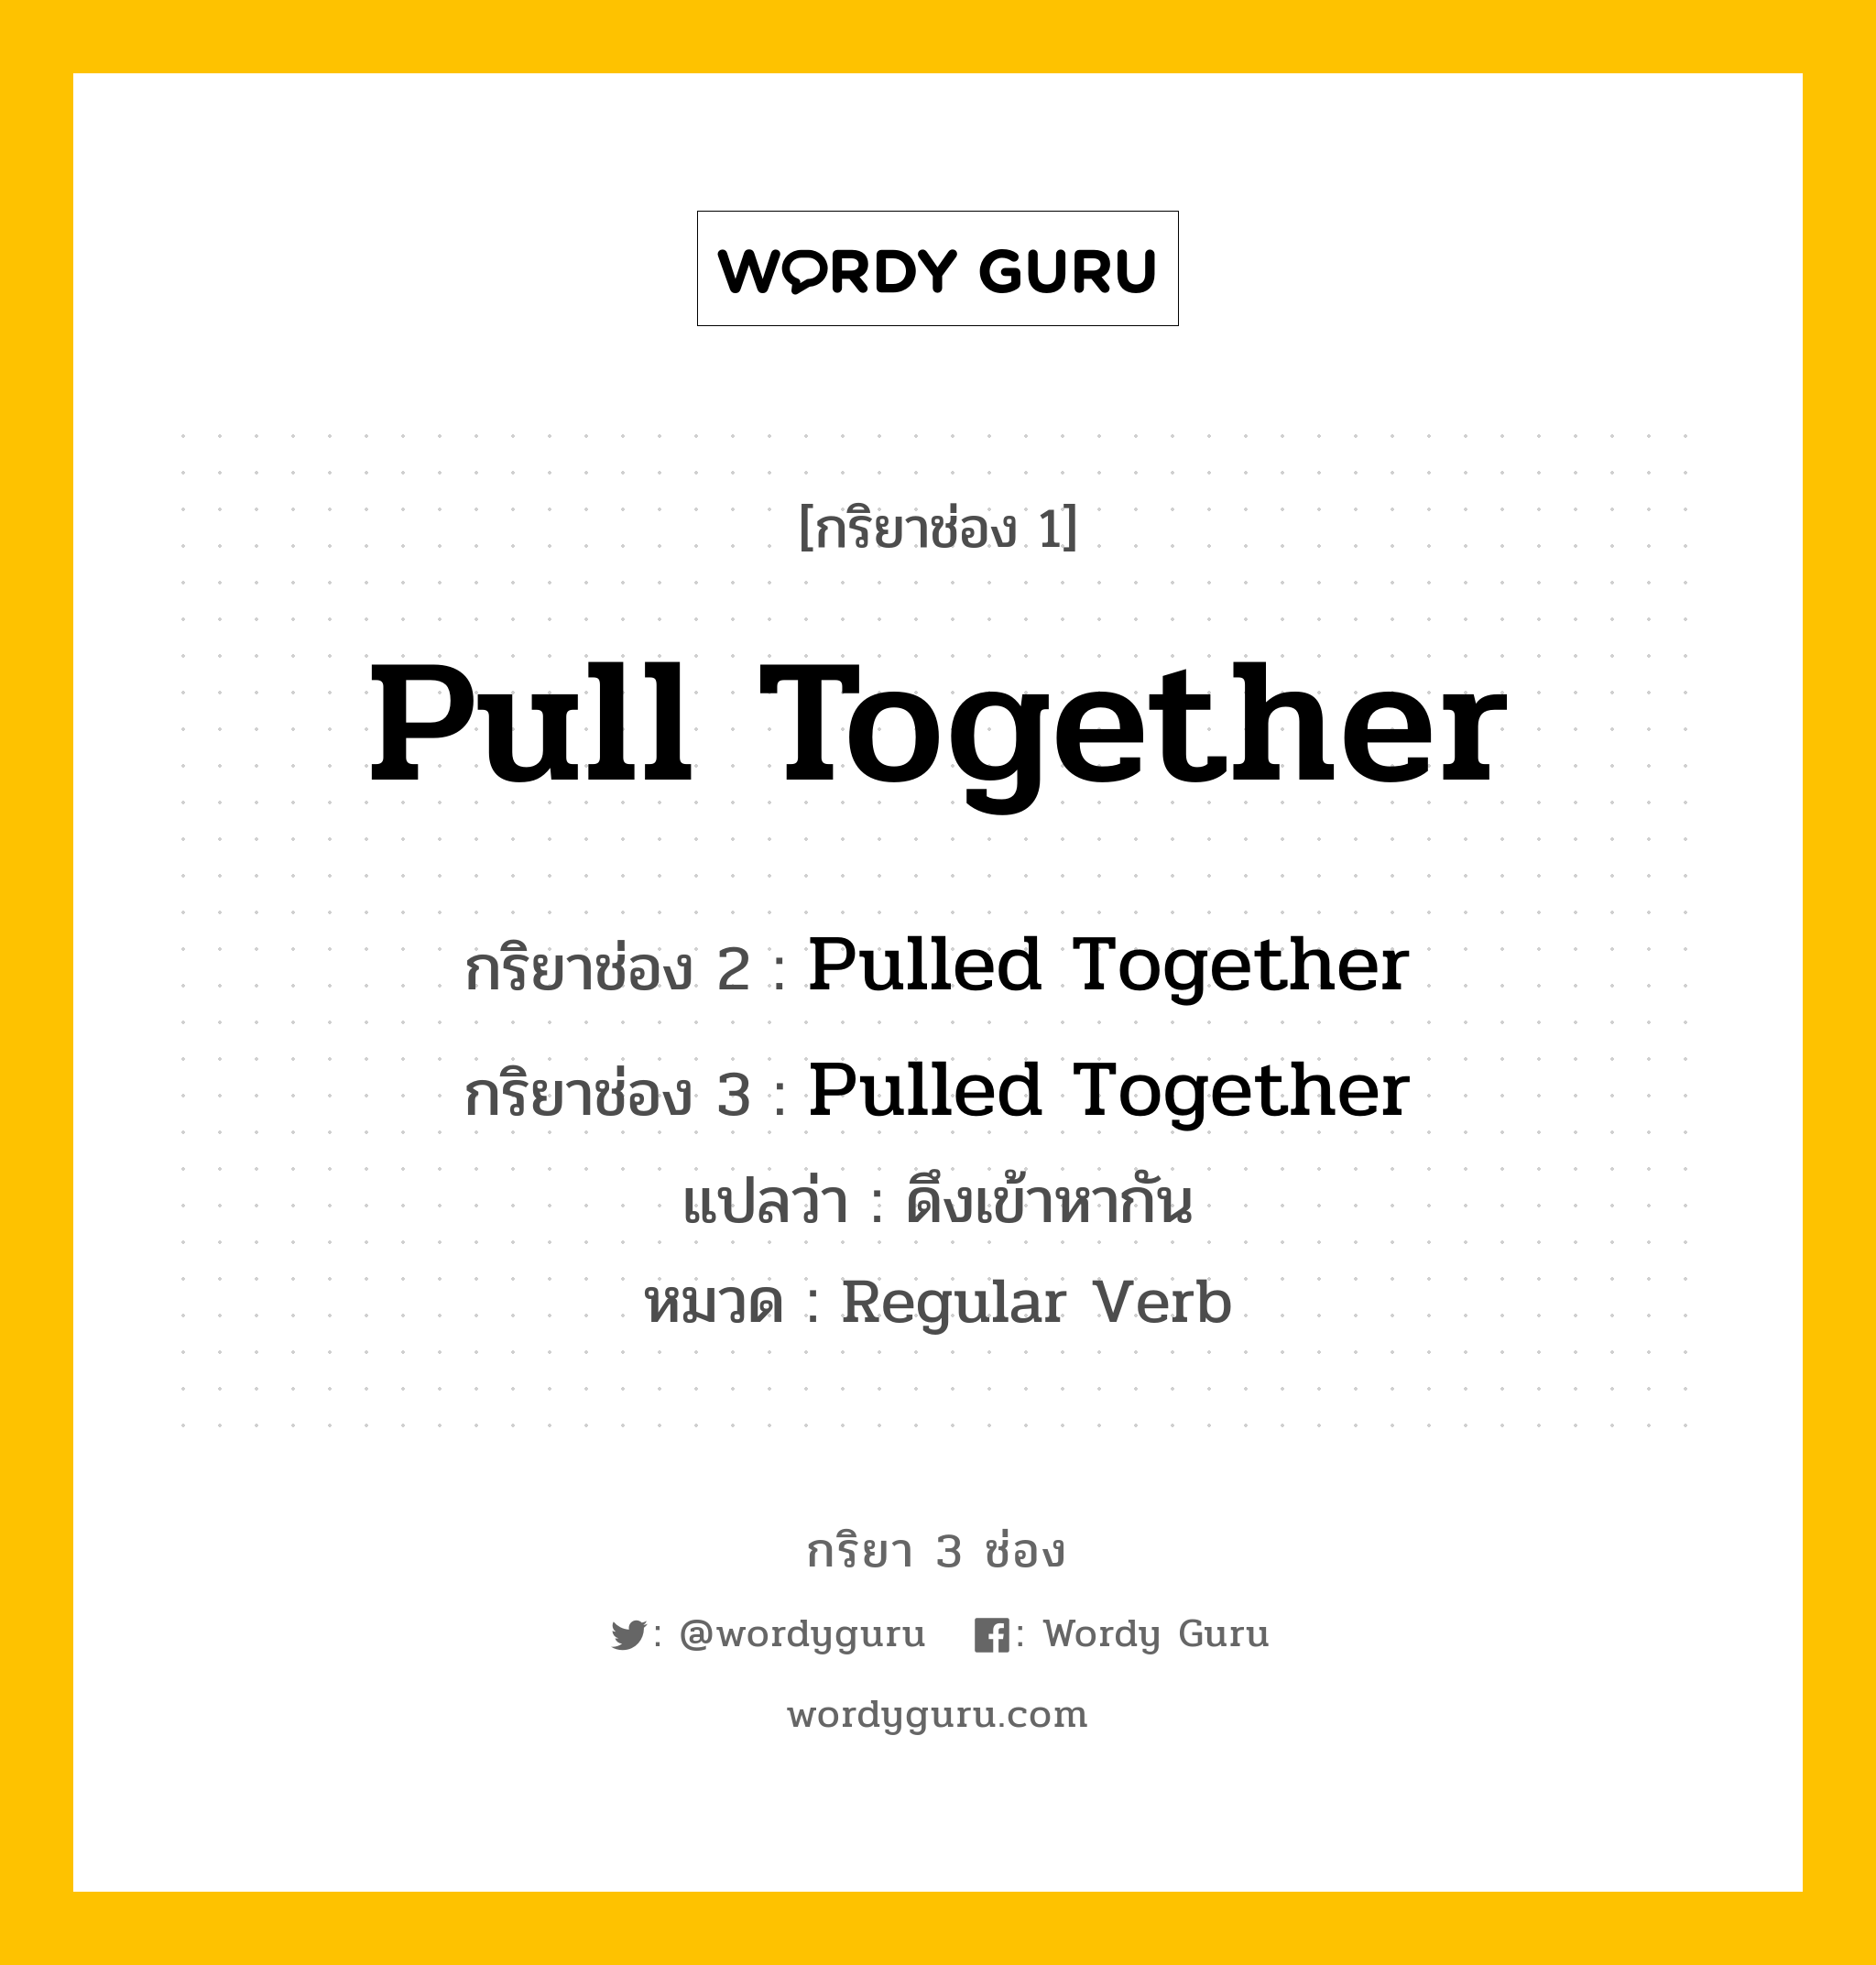 กริยา 3 ช่อง: Pull Together ช่อง 2 Pull Together ช่อง 3 คืออะไร, กริยาช่อง 1 Pull Together กริยาช่อง 2 Pulled Together กริยาช่อง 3 Pulled Together แปลว่า ดึงเข้าหากัน หมวด Regular Verb หมวด Regular Verb